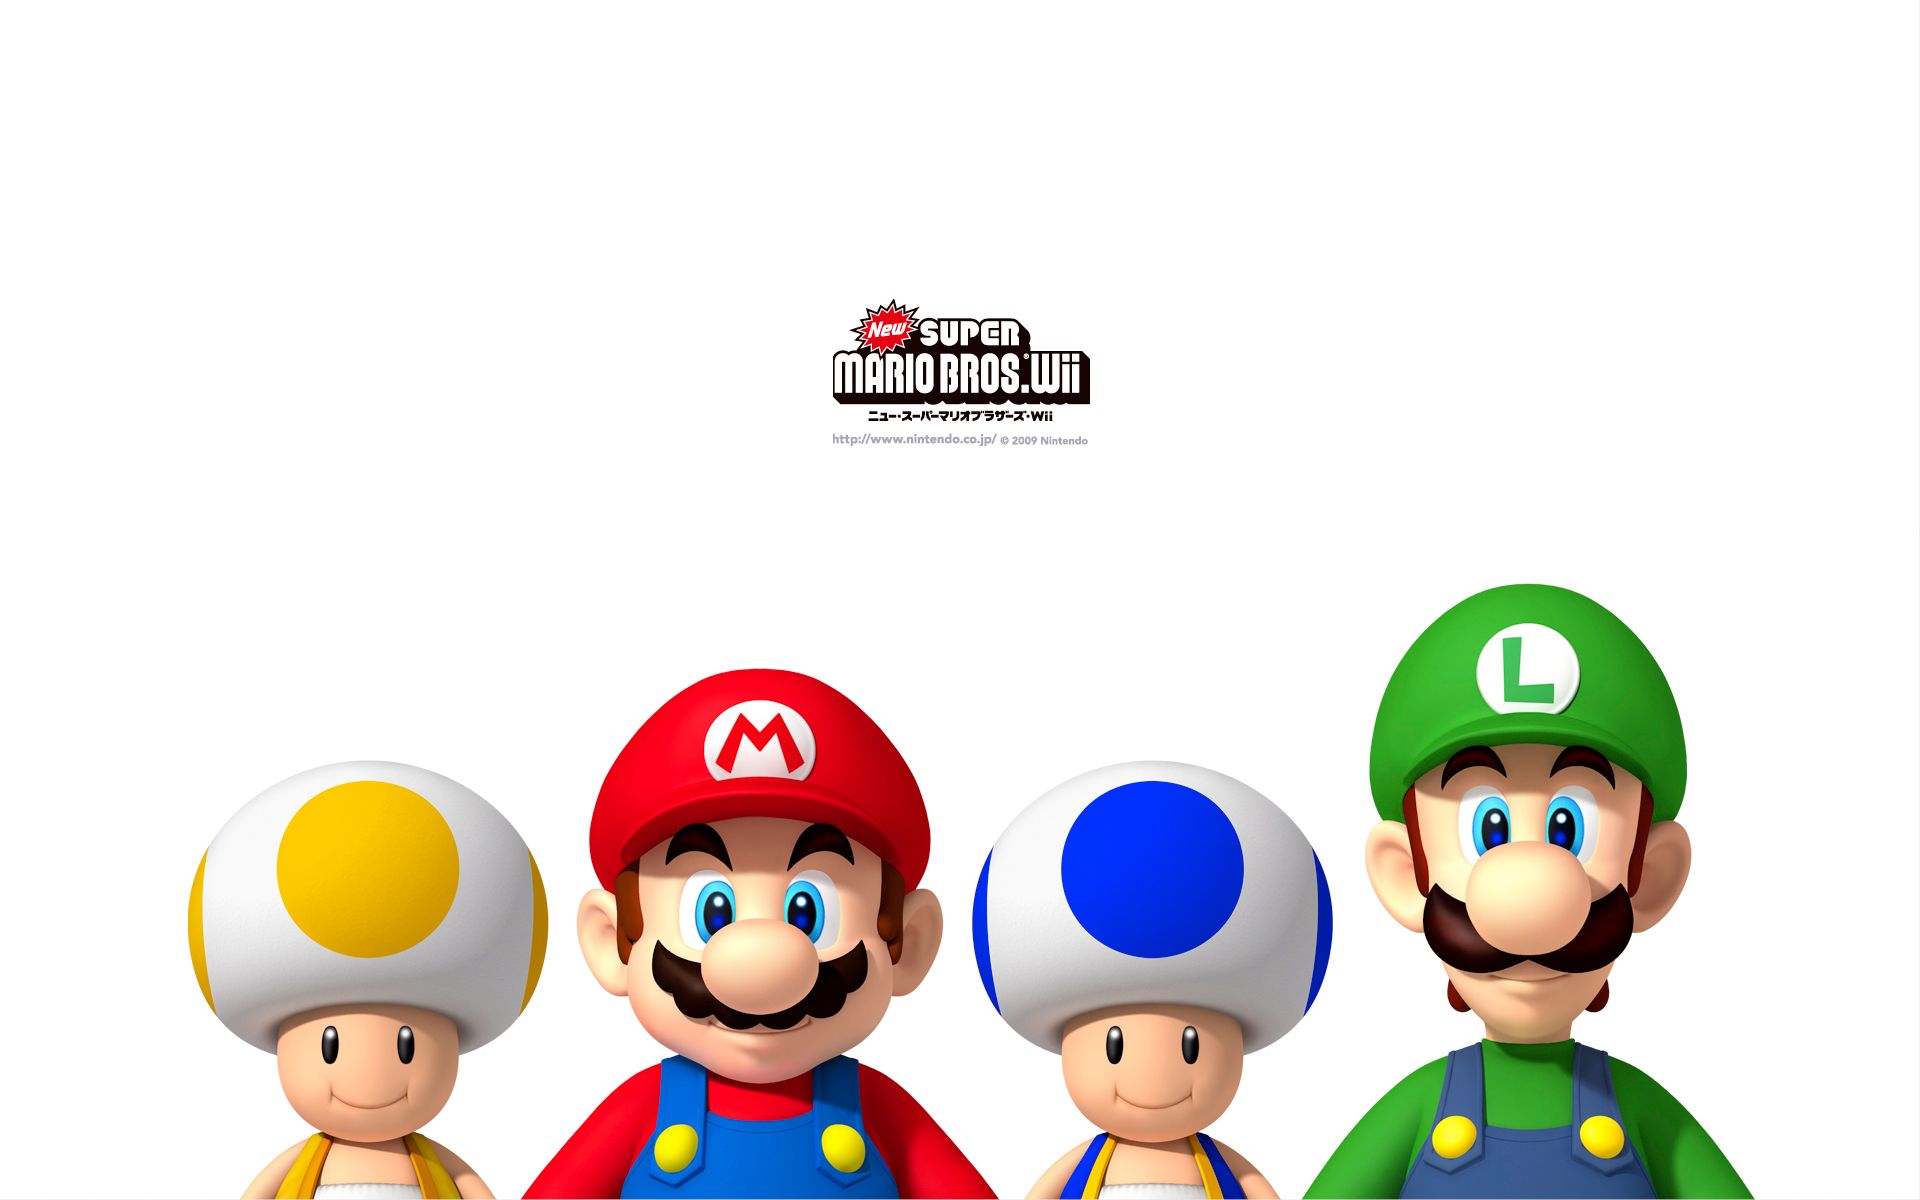 Mario Bros Fondos de alta resolución # 37T114K - 4USkY